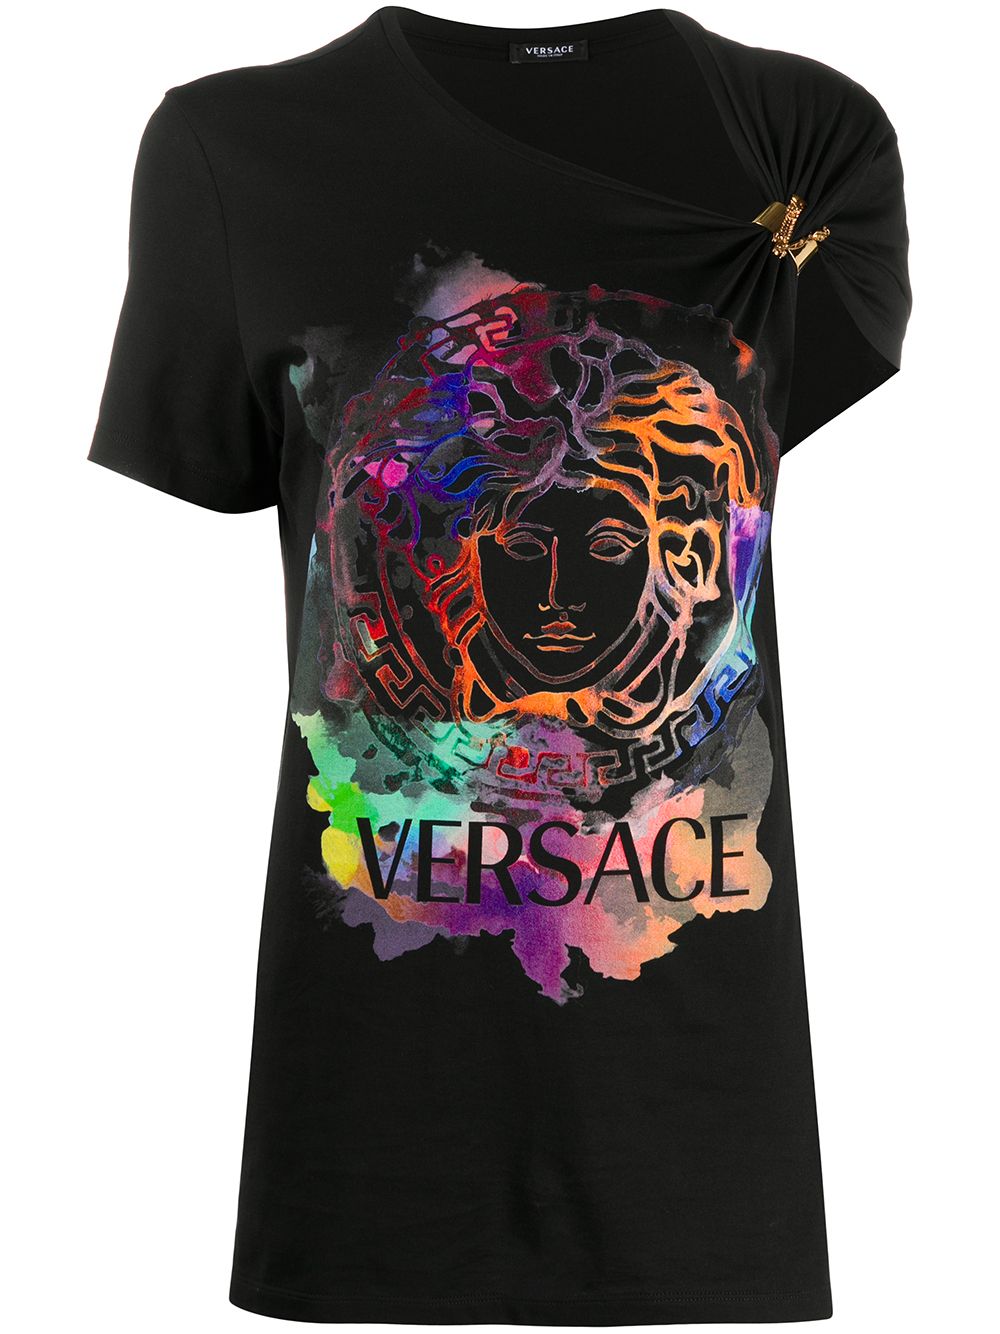 фото Versace футболка асимметричного кроя с графичным принтом